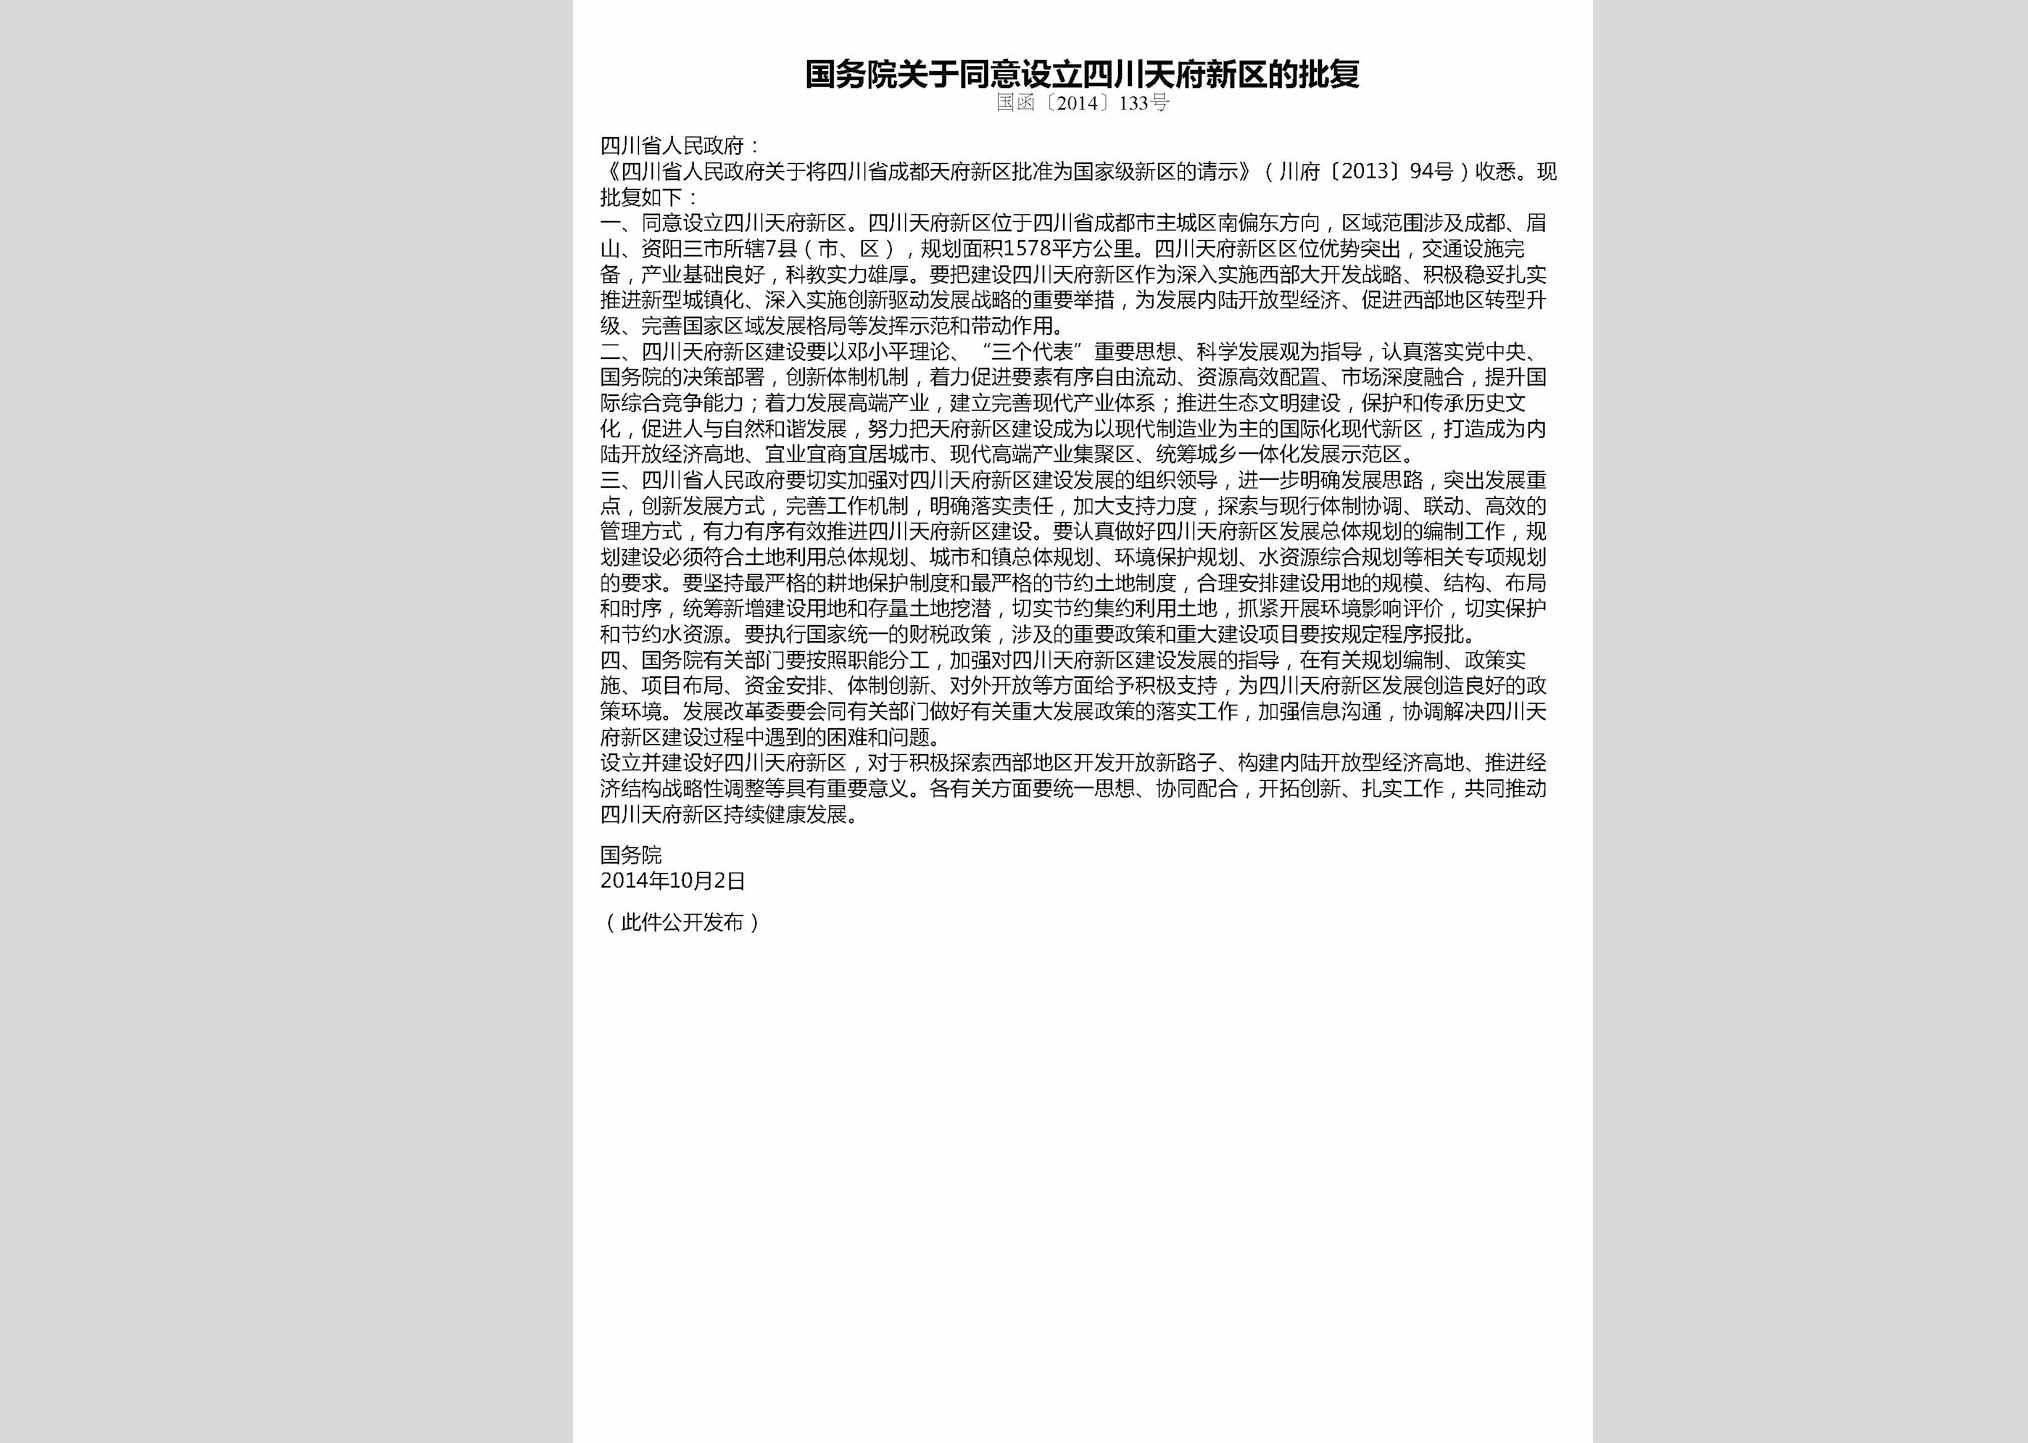 国函[2014]133号：国务院关于同意设立四川天府新区的批复